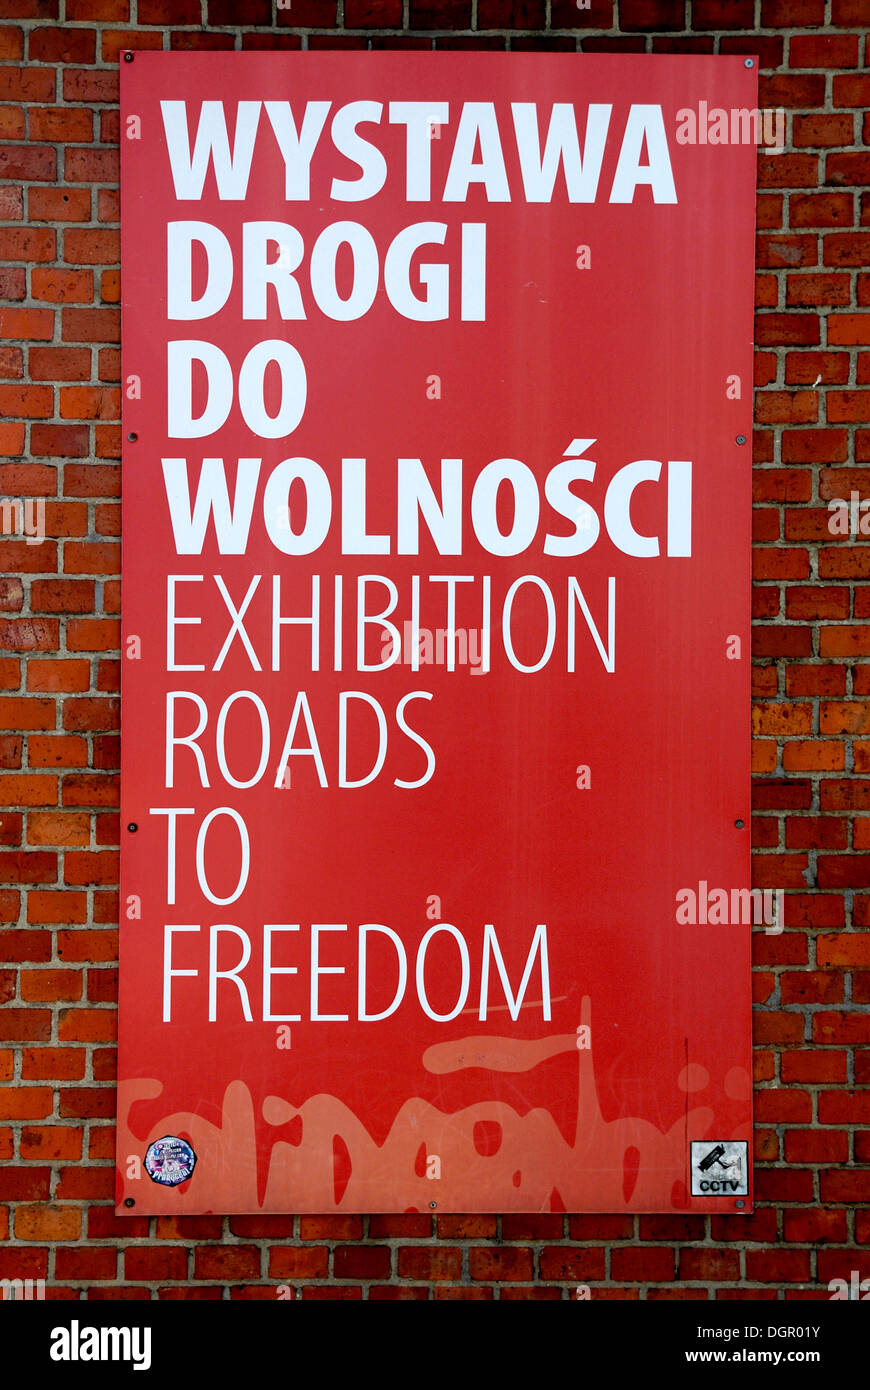 Ausstellung in Danzig auf dem Kampf der polnischen Gewerkschaft Solidarnosc "Wege zur Freiheit" - Wystawa Drogi Wolnosci. Stockfoto